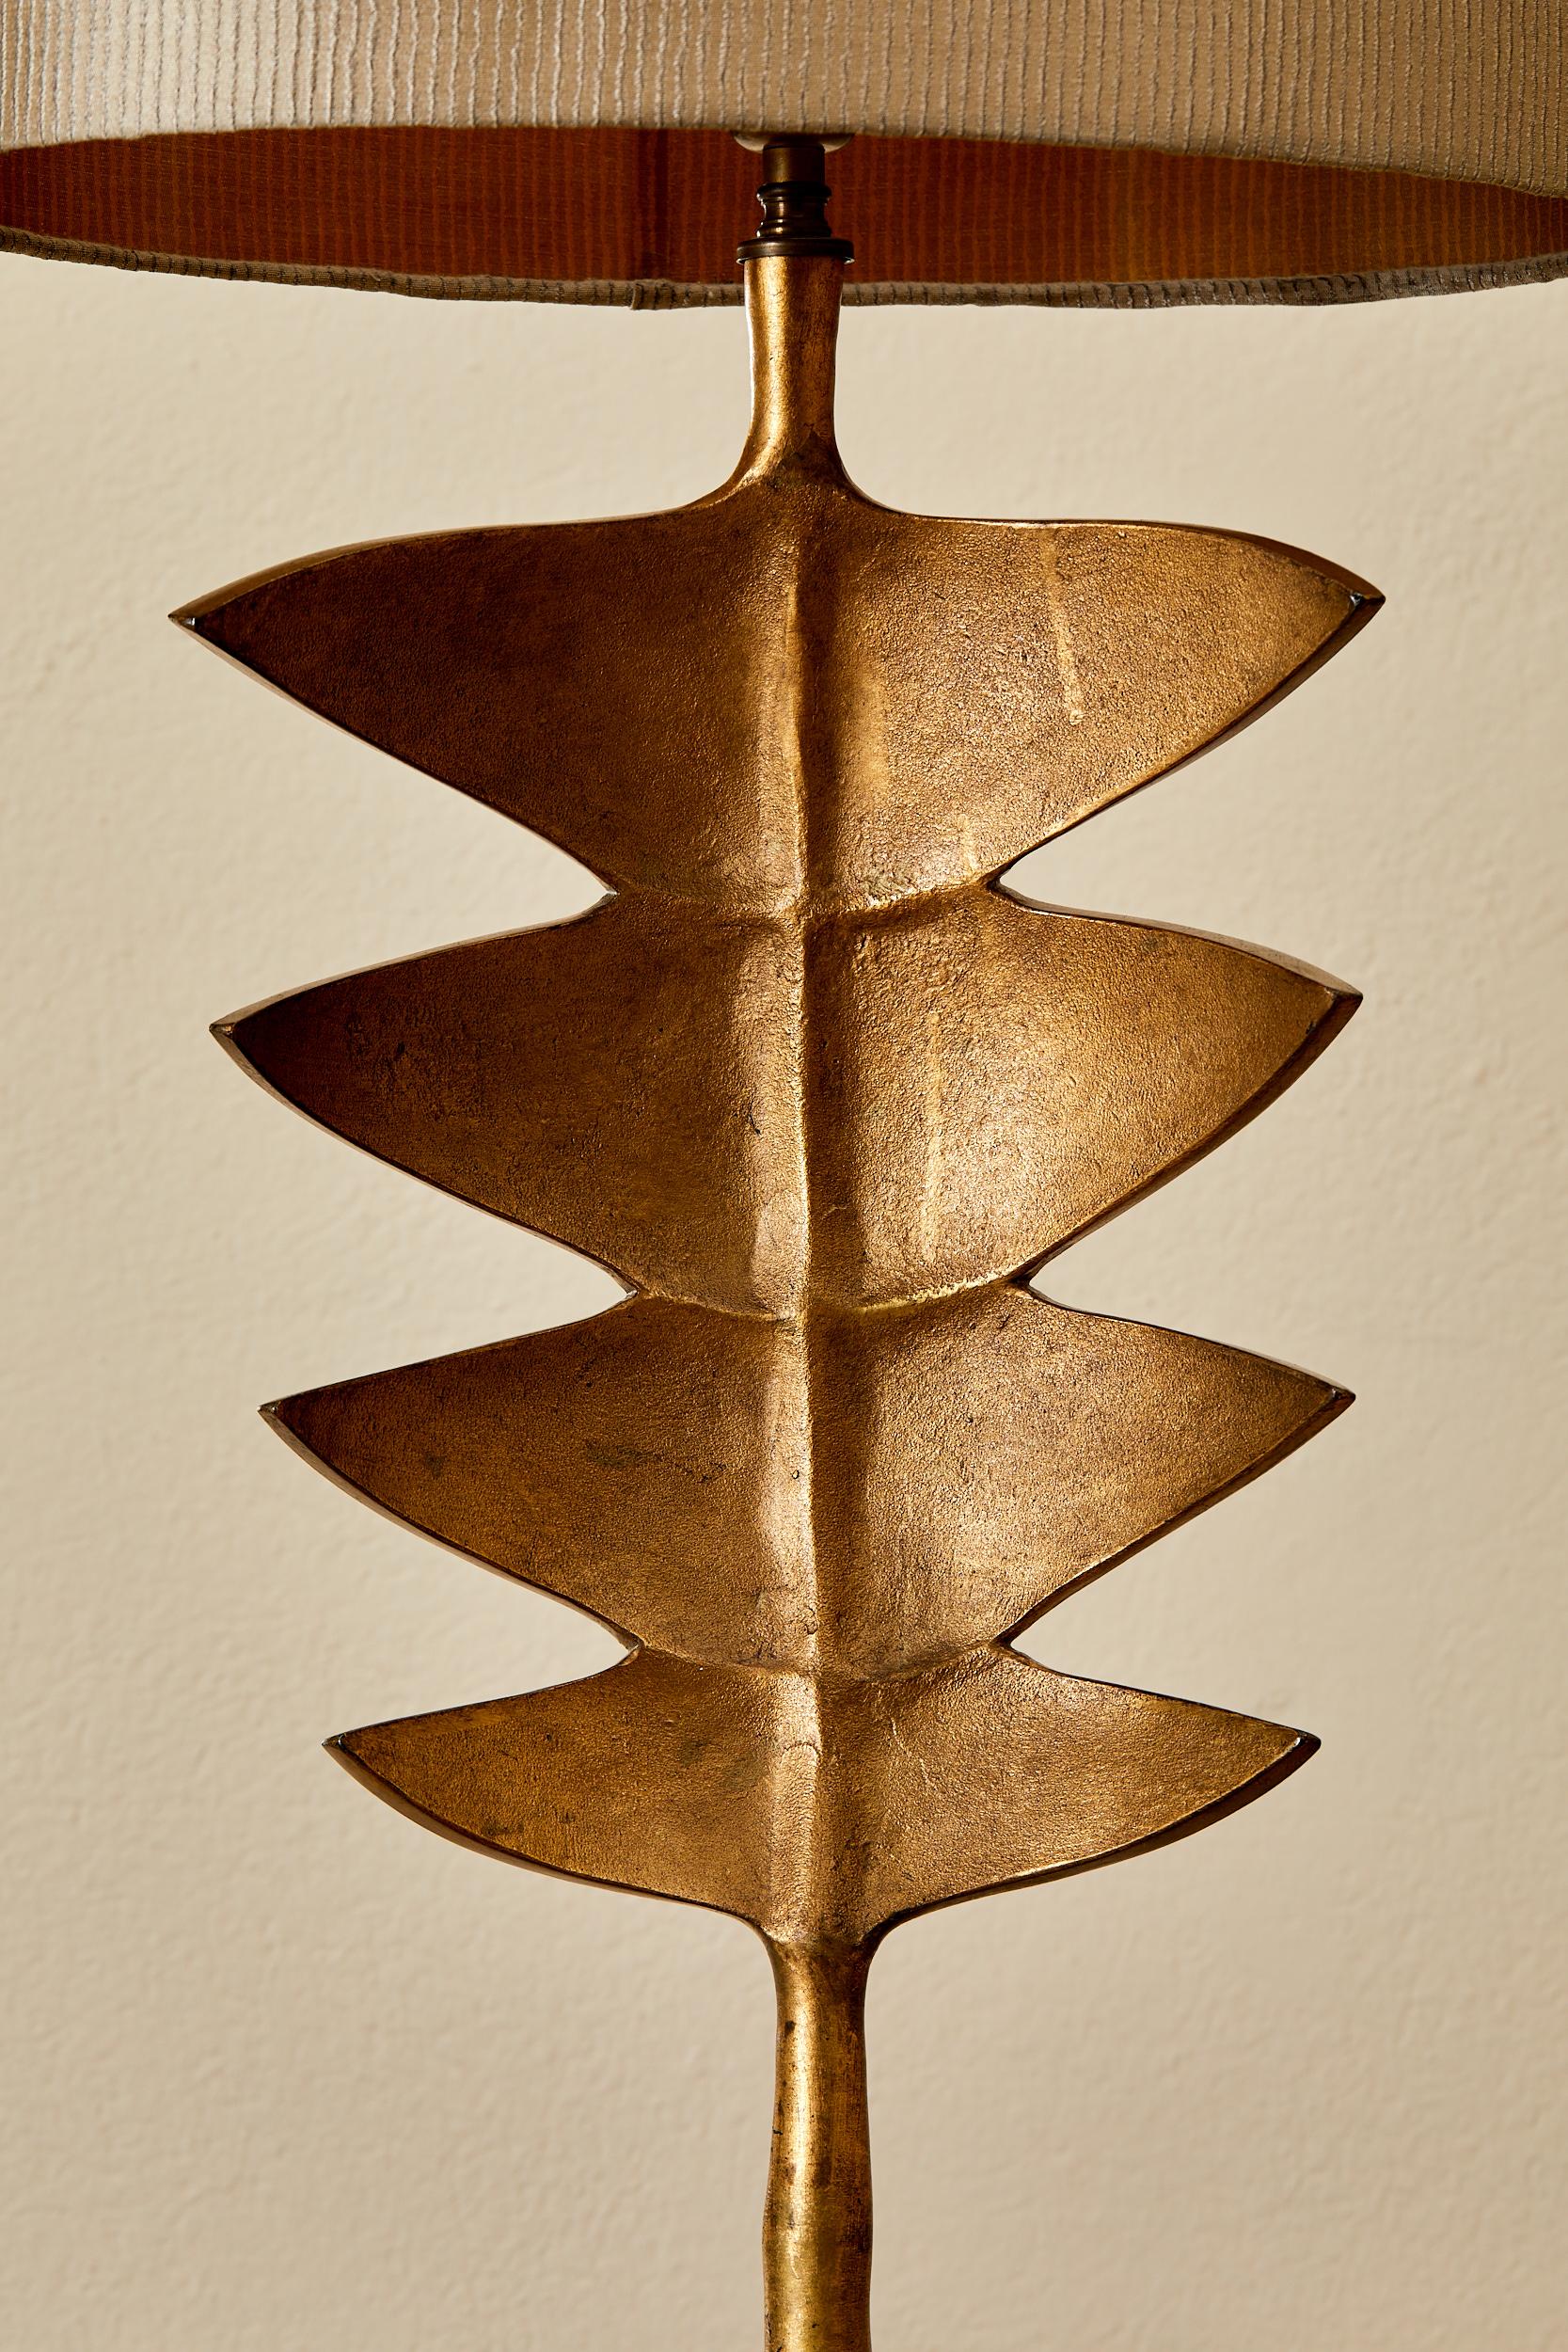 Resin Porto Romana, lampe de table en résine à l'imitation du bronze, circa 2000.